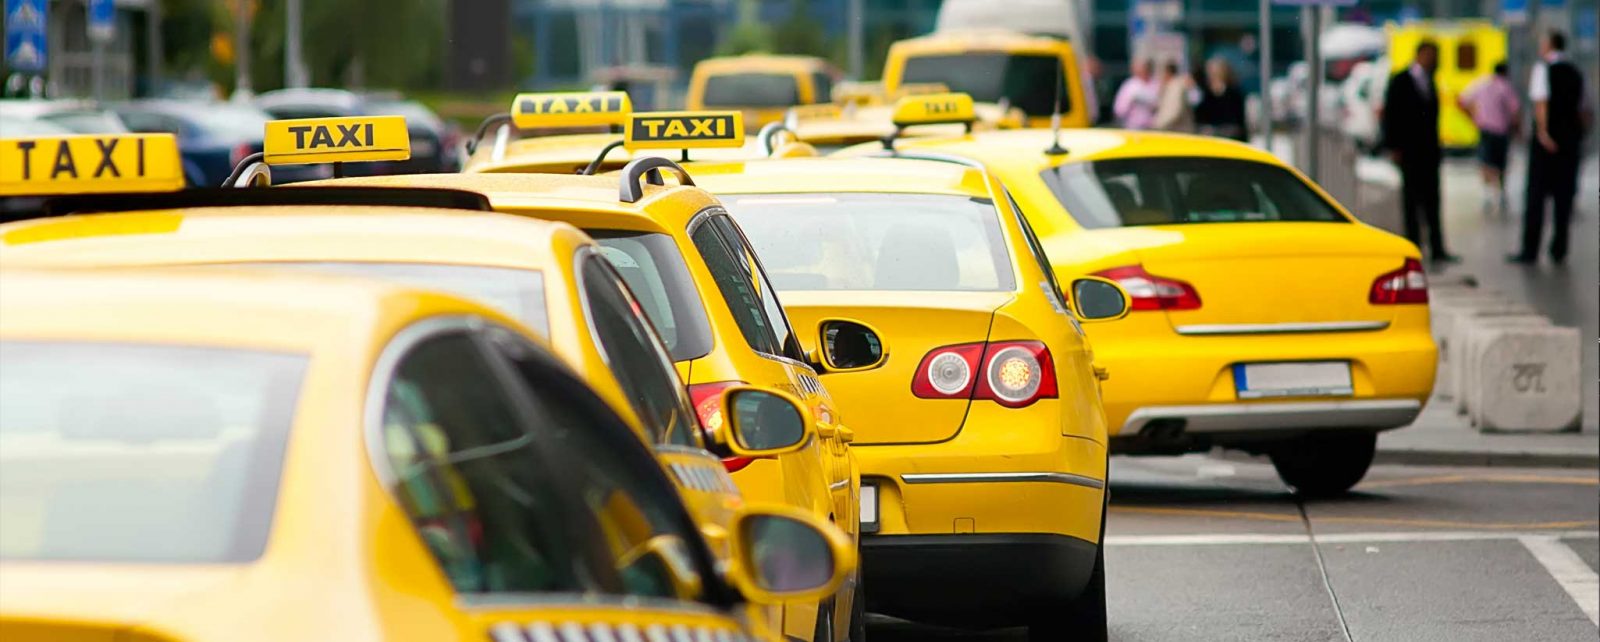 Как выбрать идеальное приложение для вызова такси?